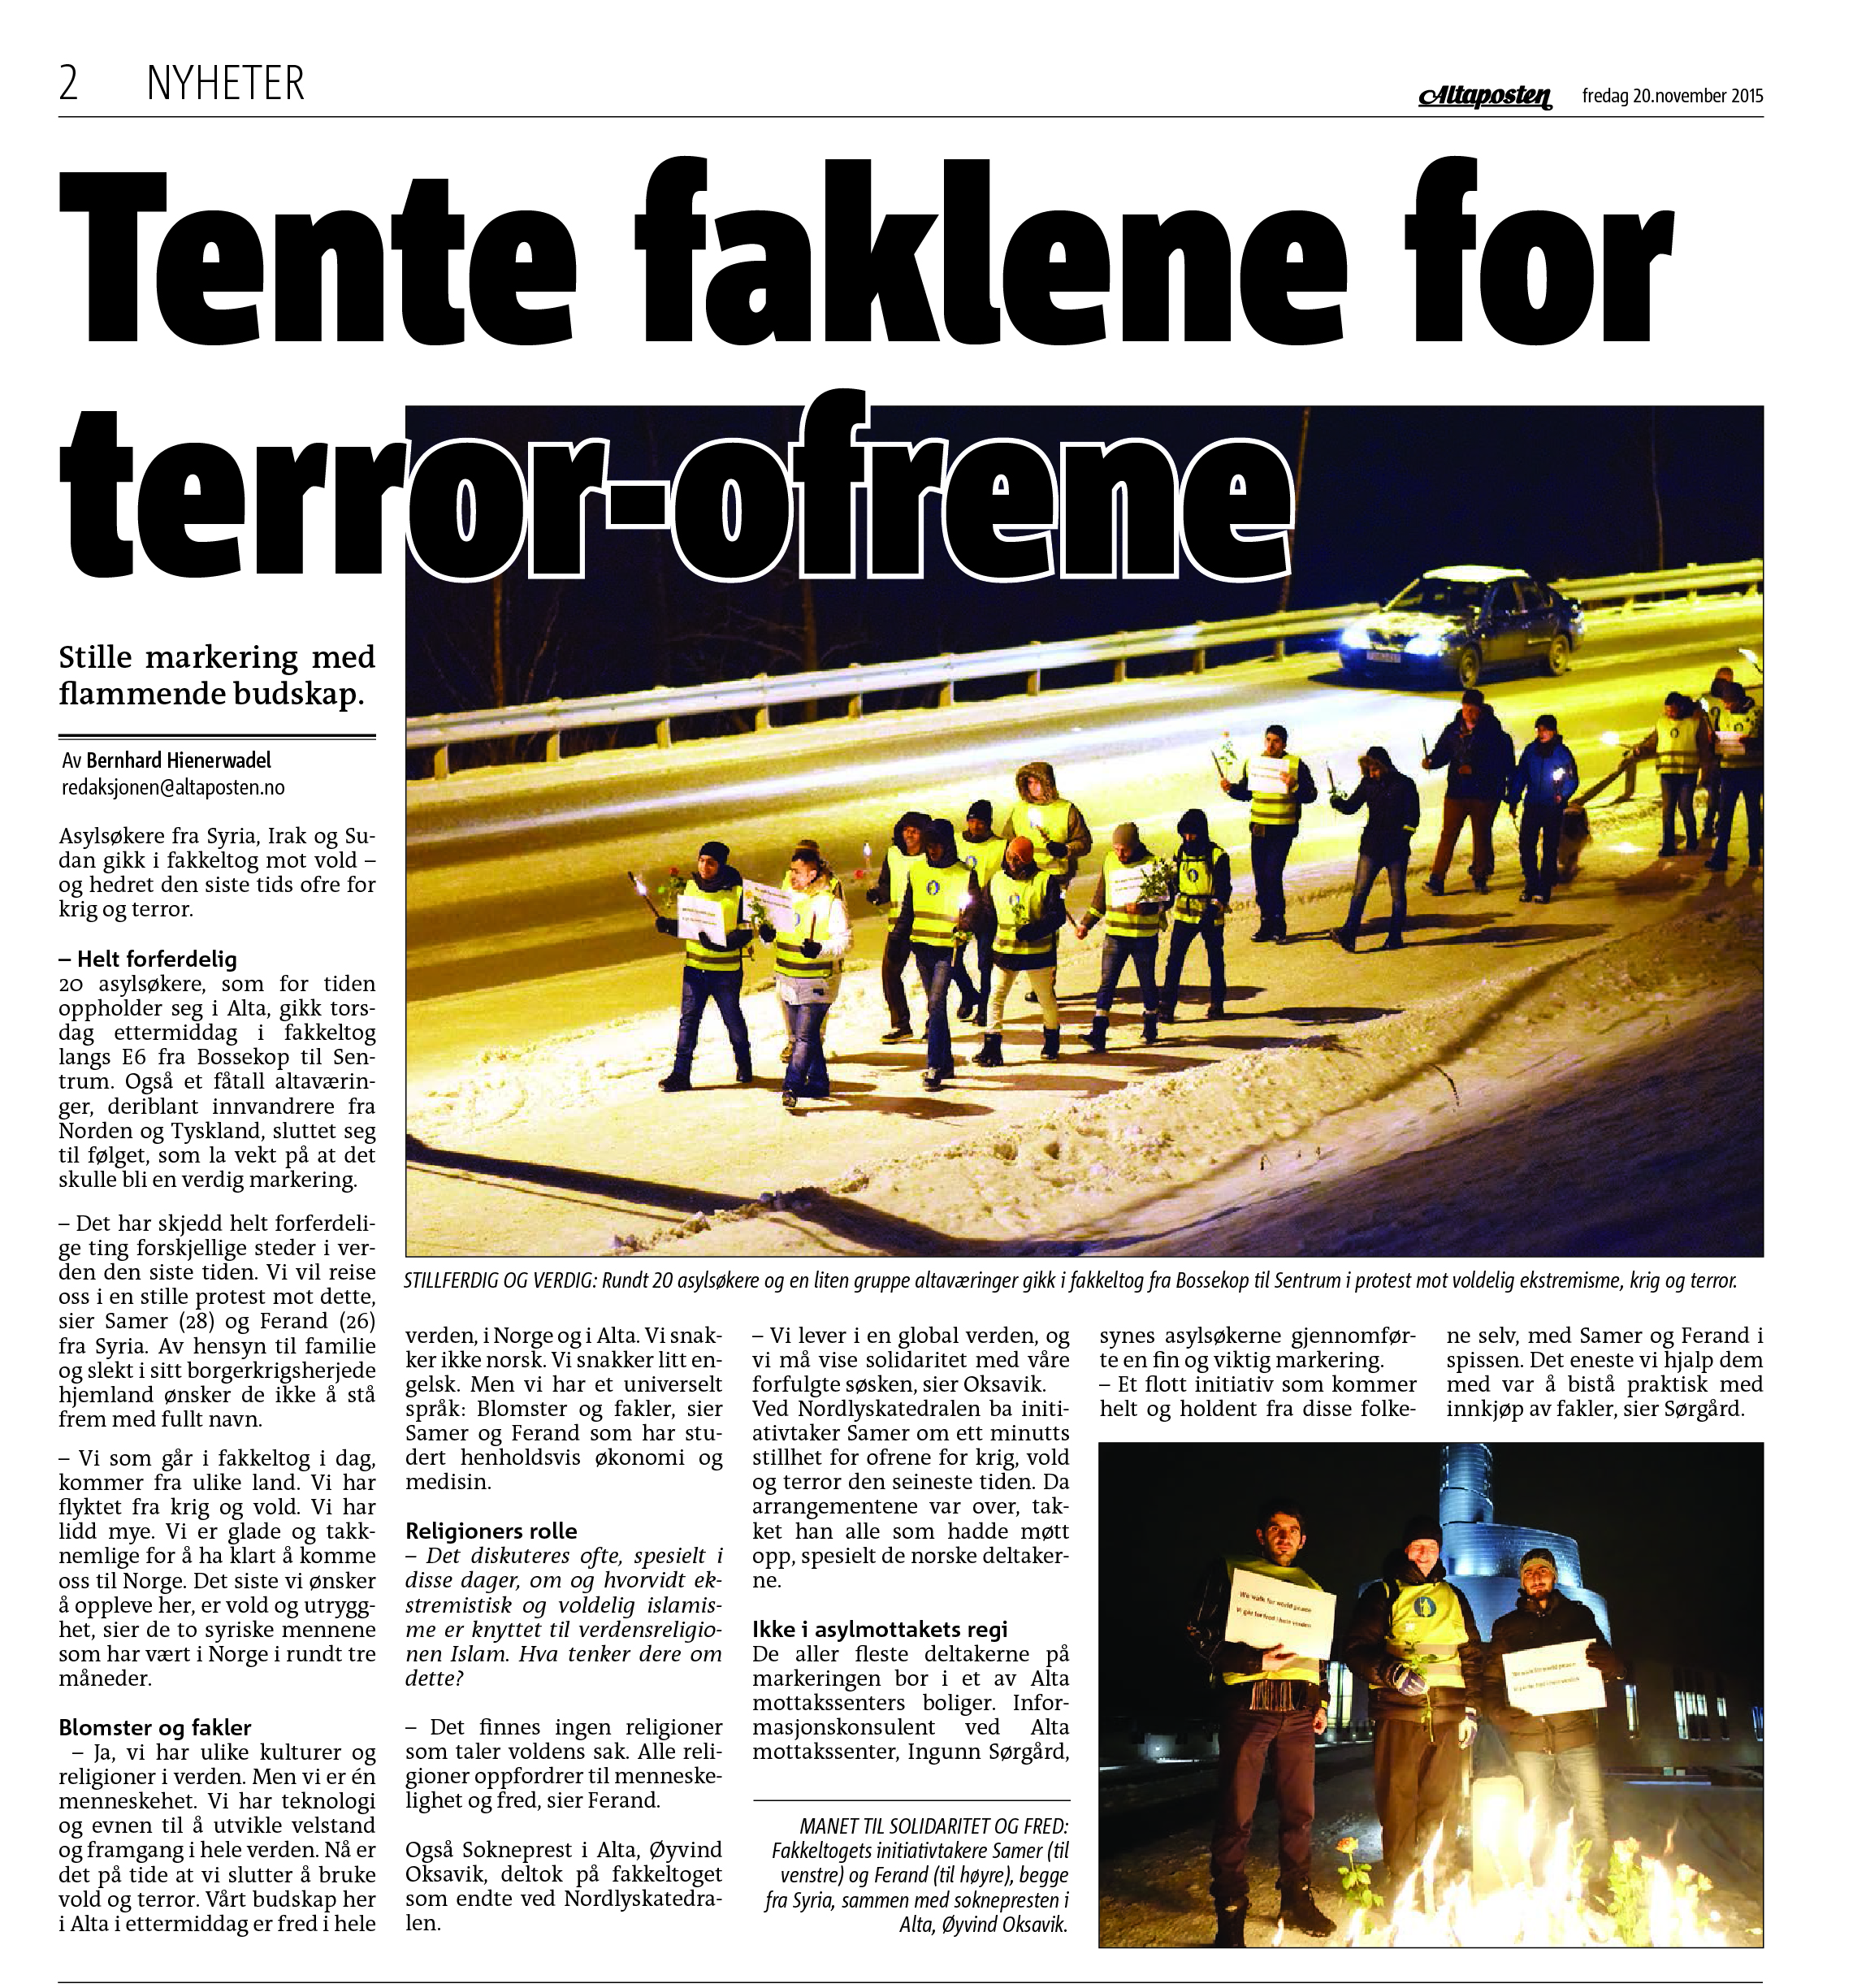 Tente faklene for terror-ofrene